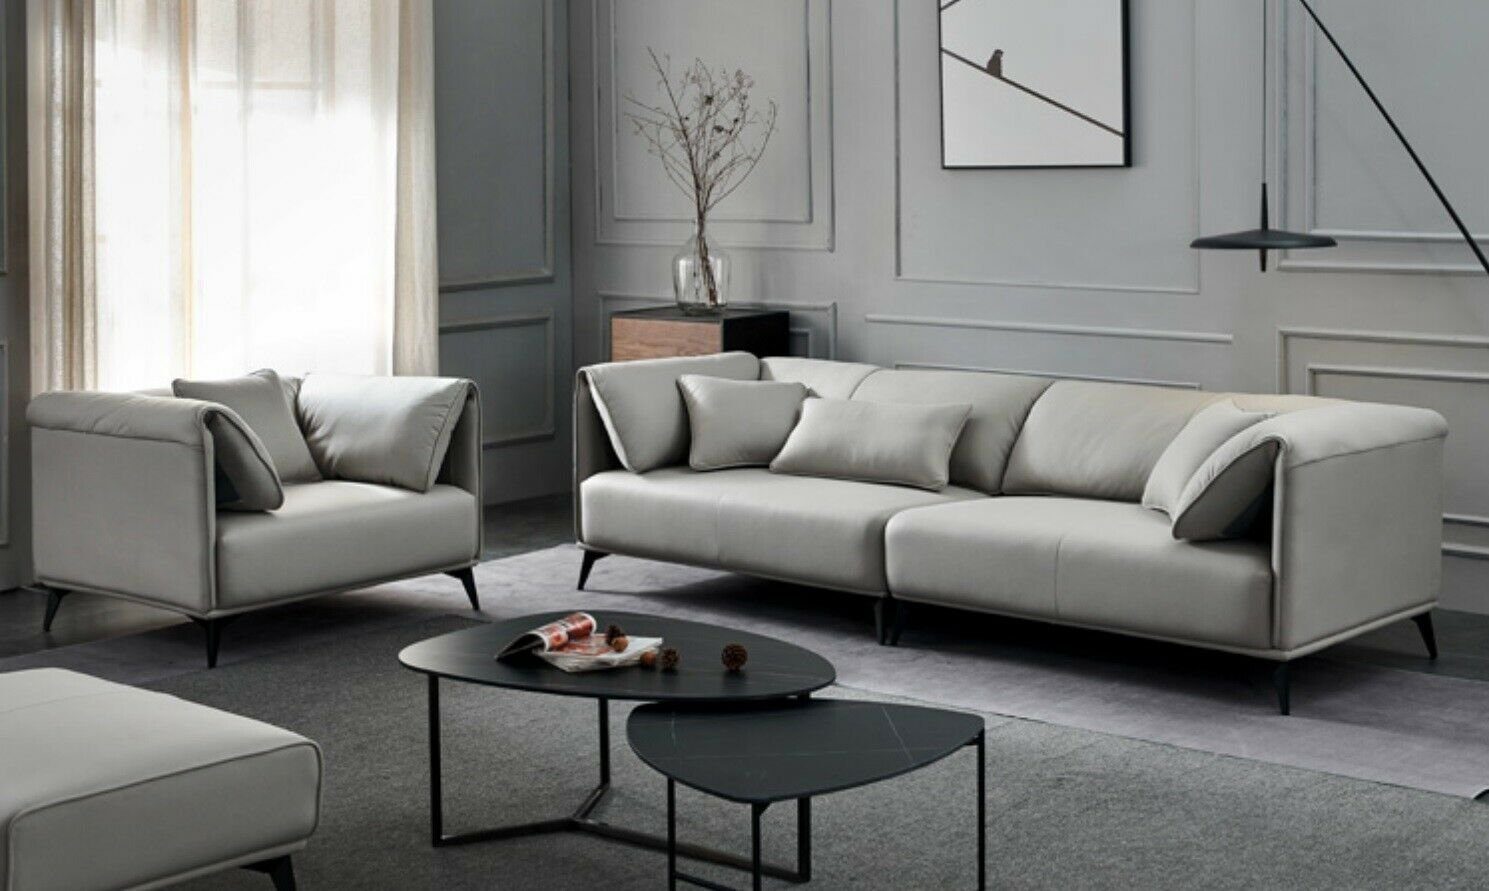 JVmoebel Sofa, Wohnzimmer Sofas Couches Polsterung 4 Sitzer Neu Grau Design Xxl Big